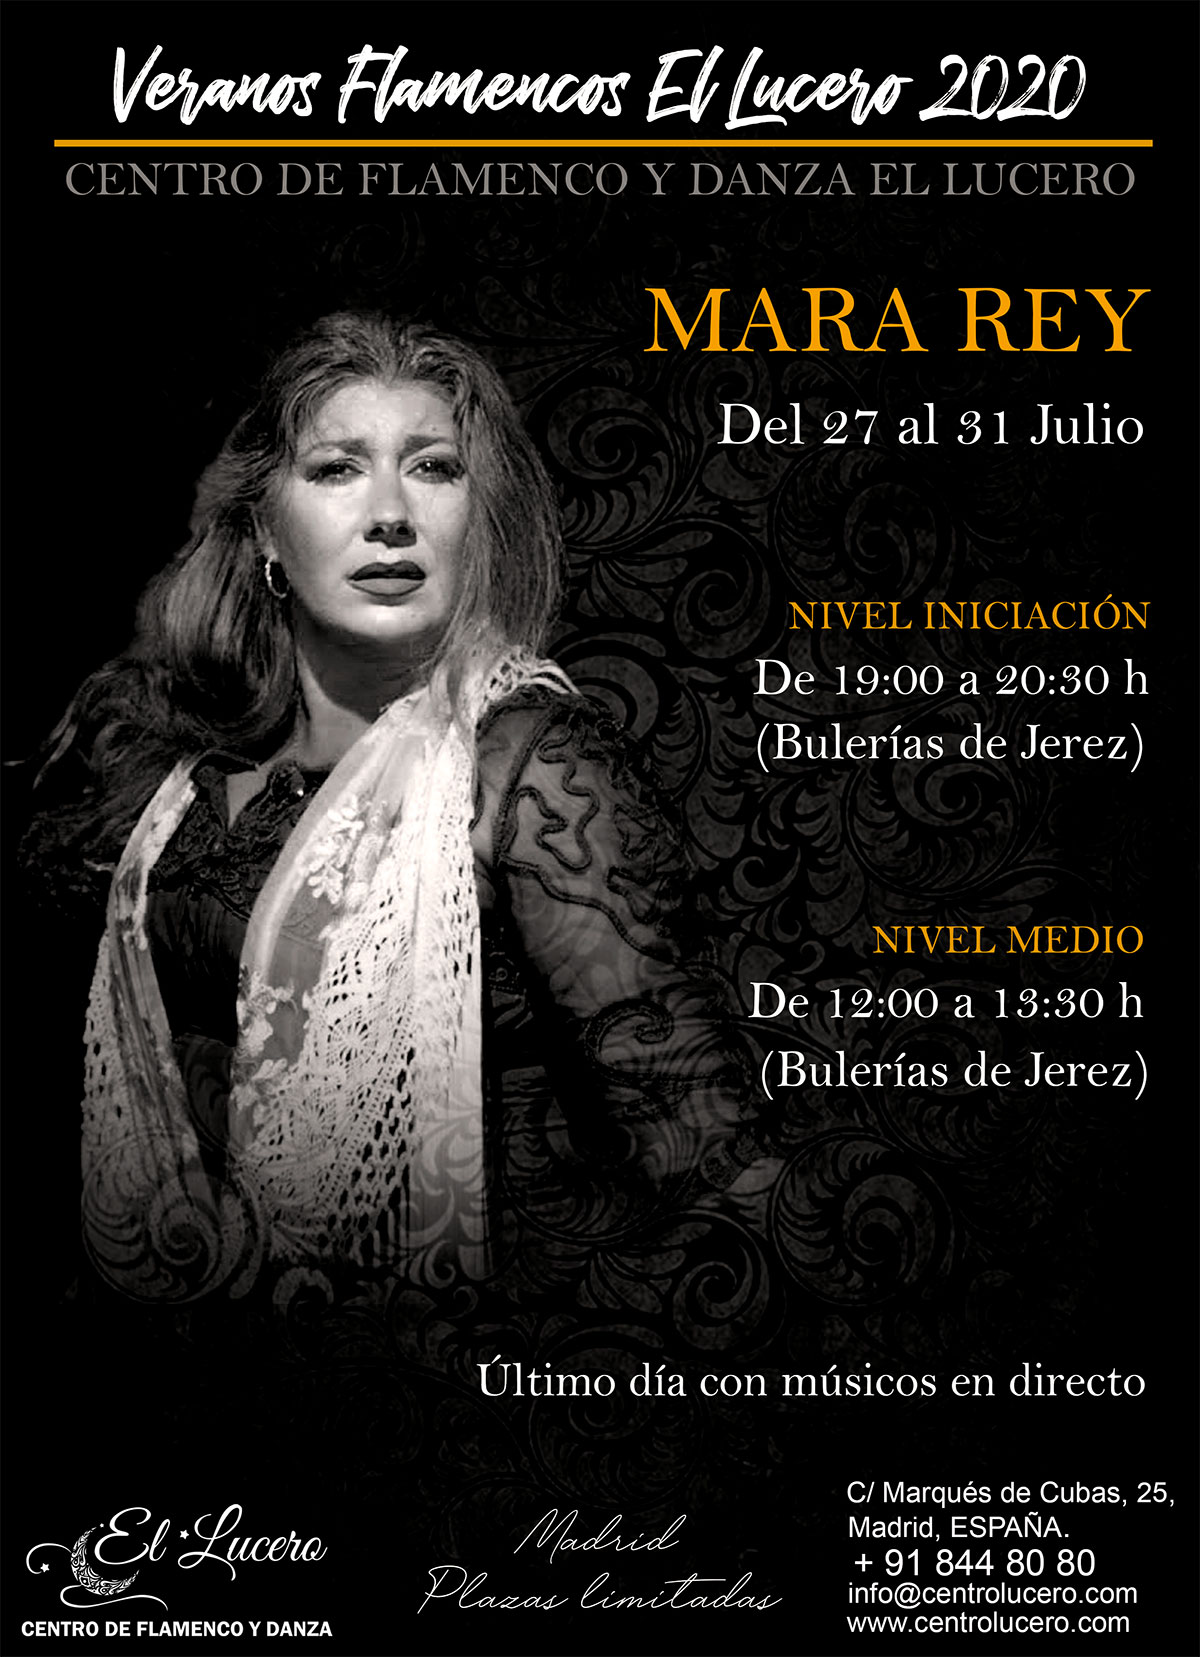 Veranos Flamencos EL LUCERO - Mara Rey